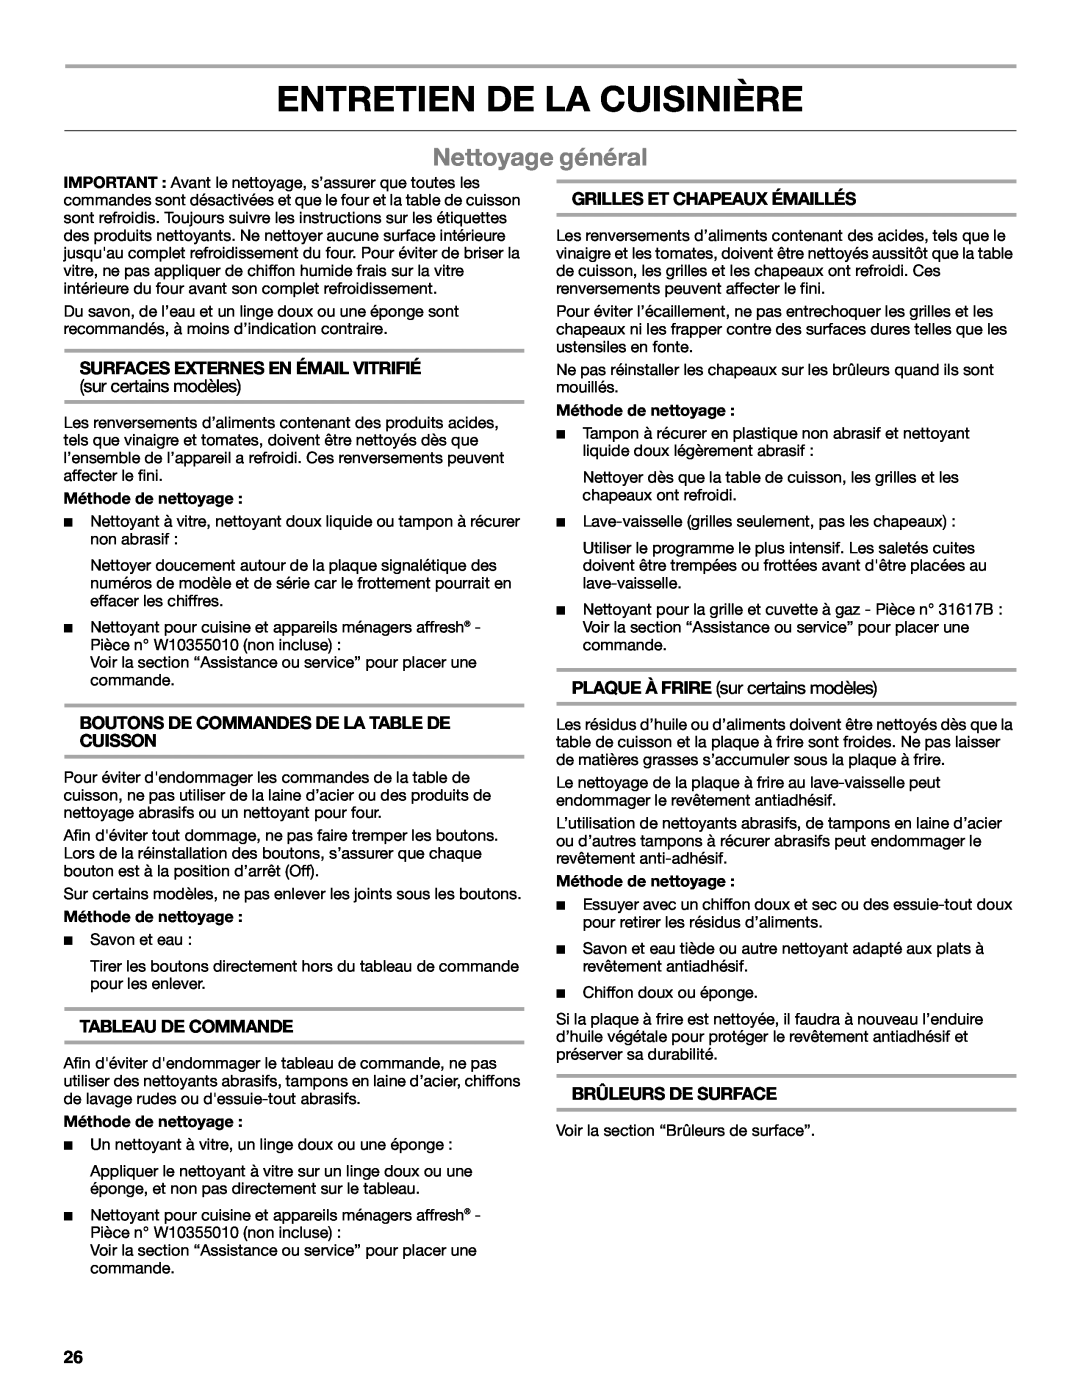 Whirlpool WFG231LVS manual Entretien De La Cuisinière, Nettoyage général, Surfaces Externes En Émail Vitrifié 